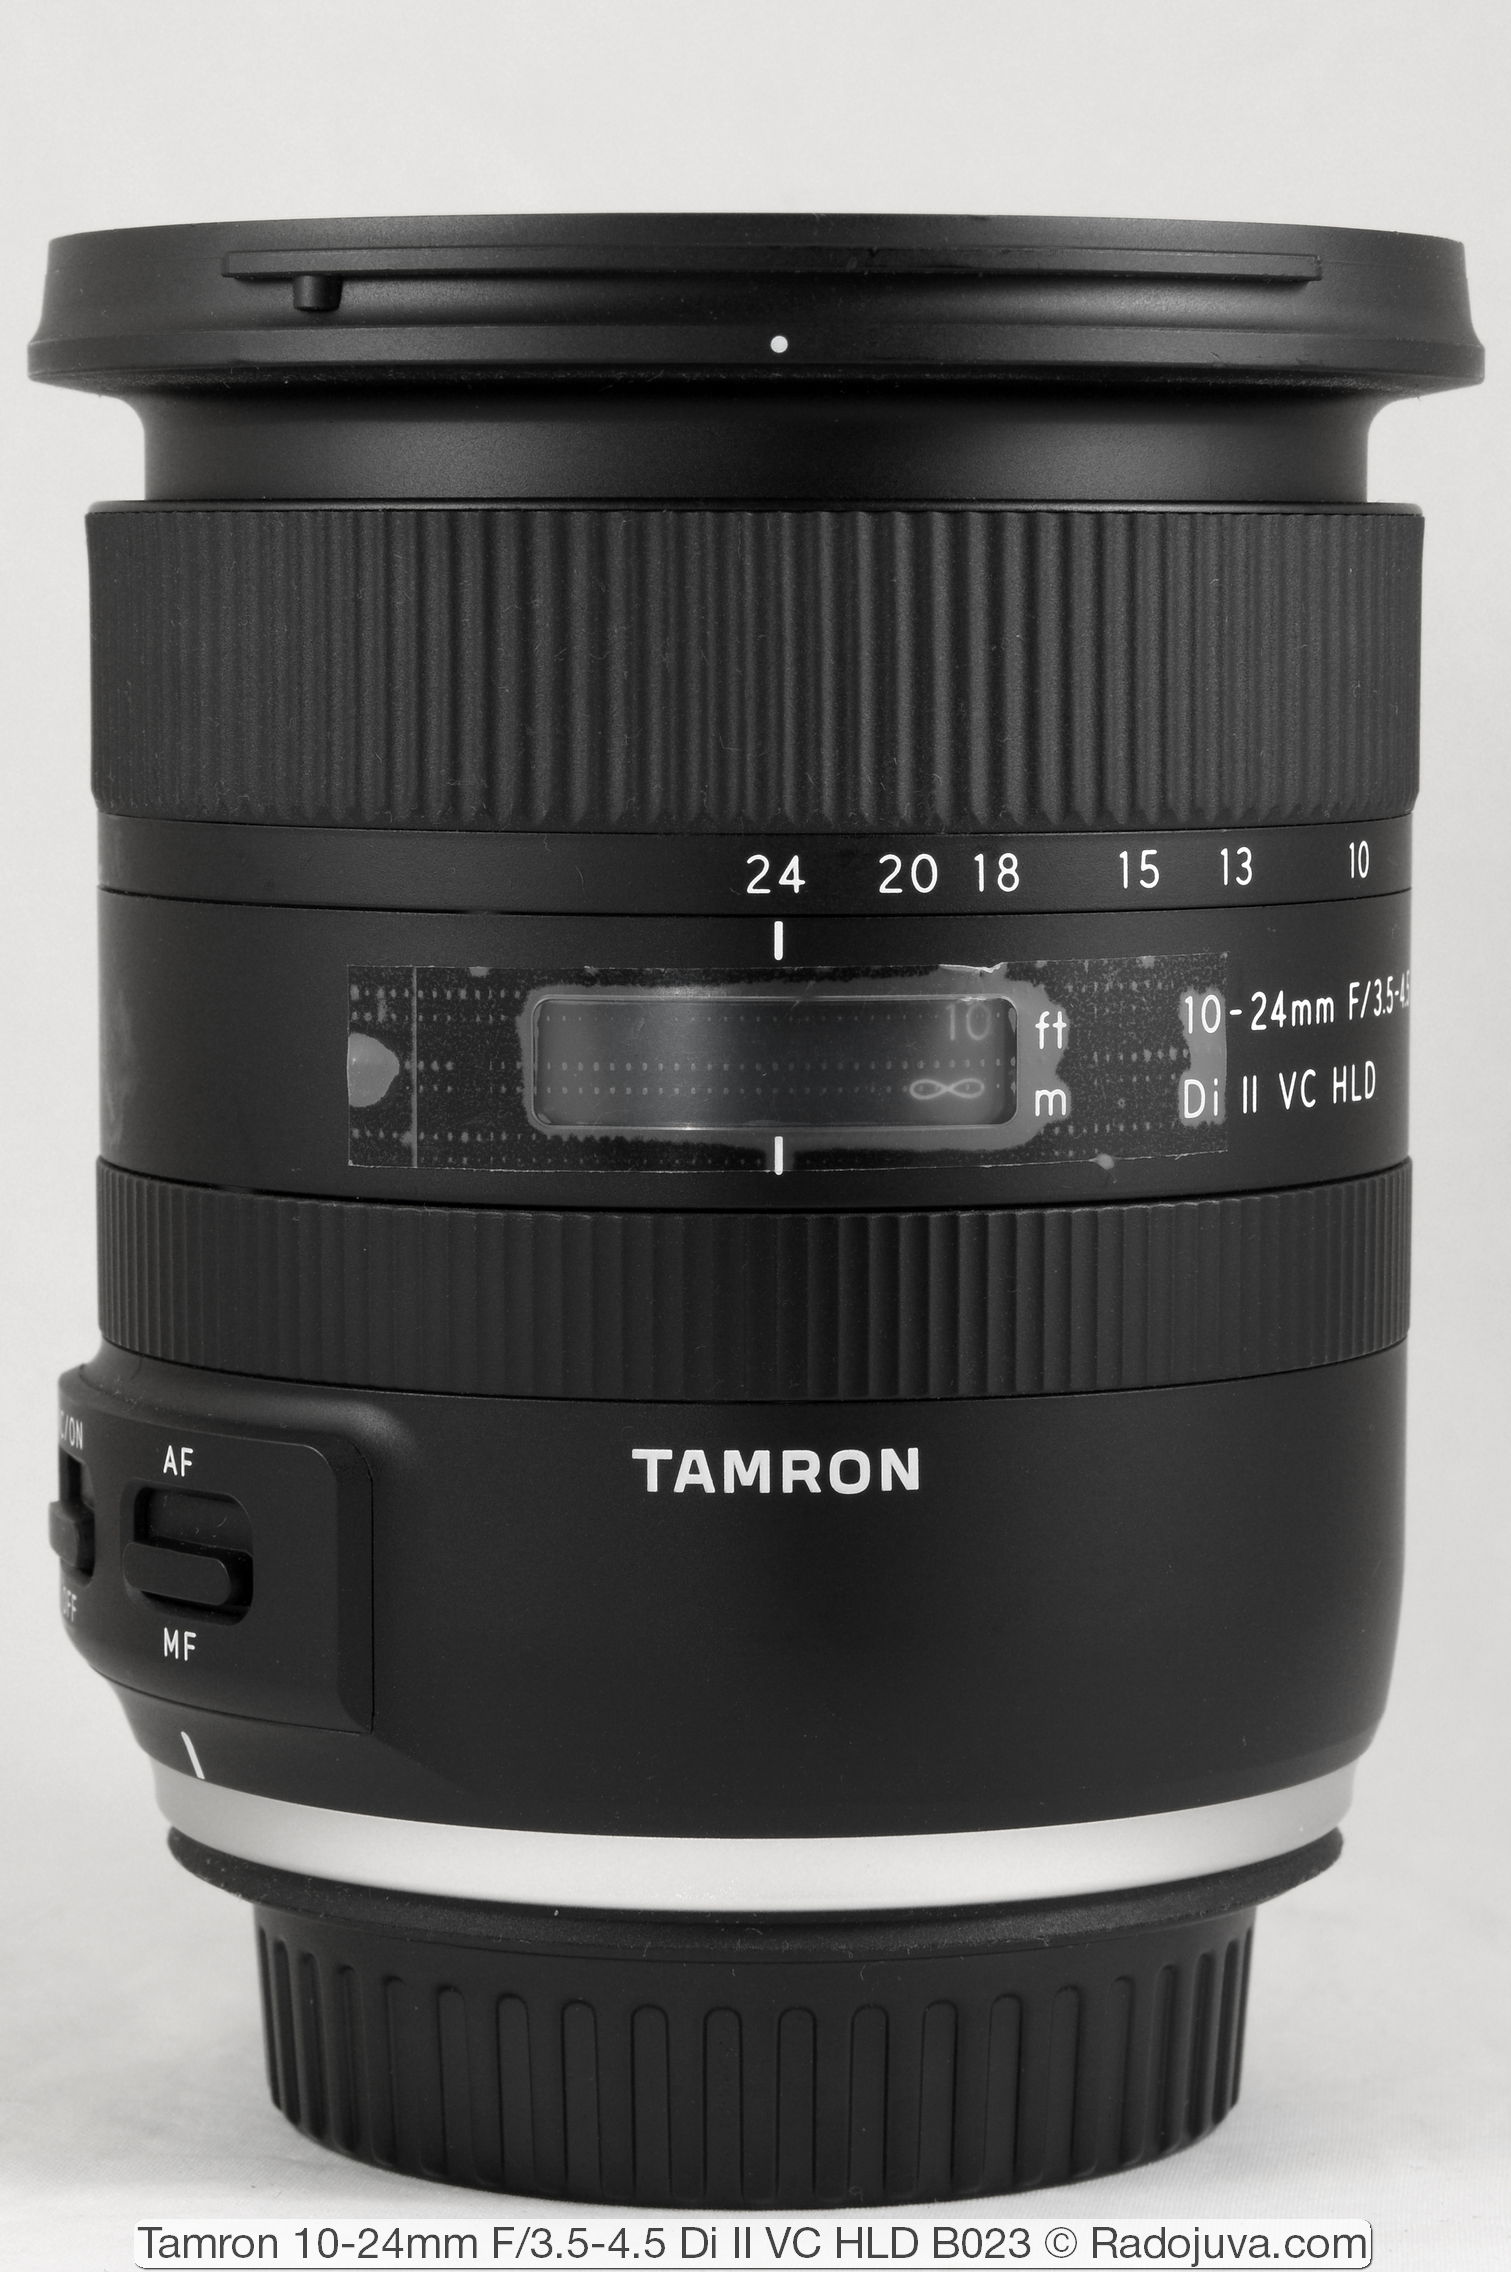 Tamron 10-24mm F/3.5-4.5 Di II VC HLD B023